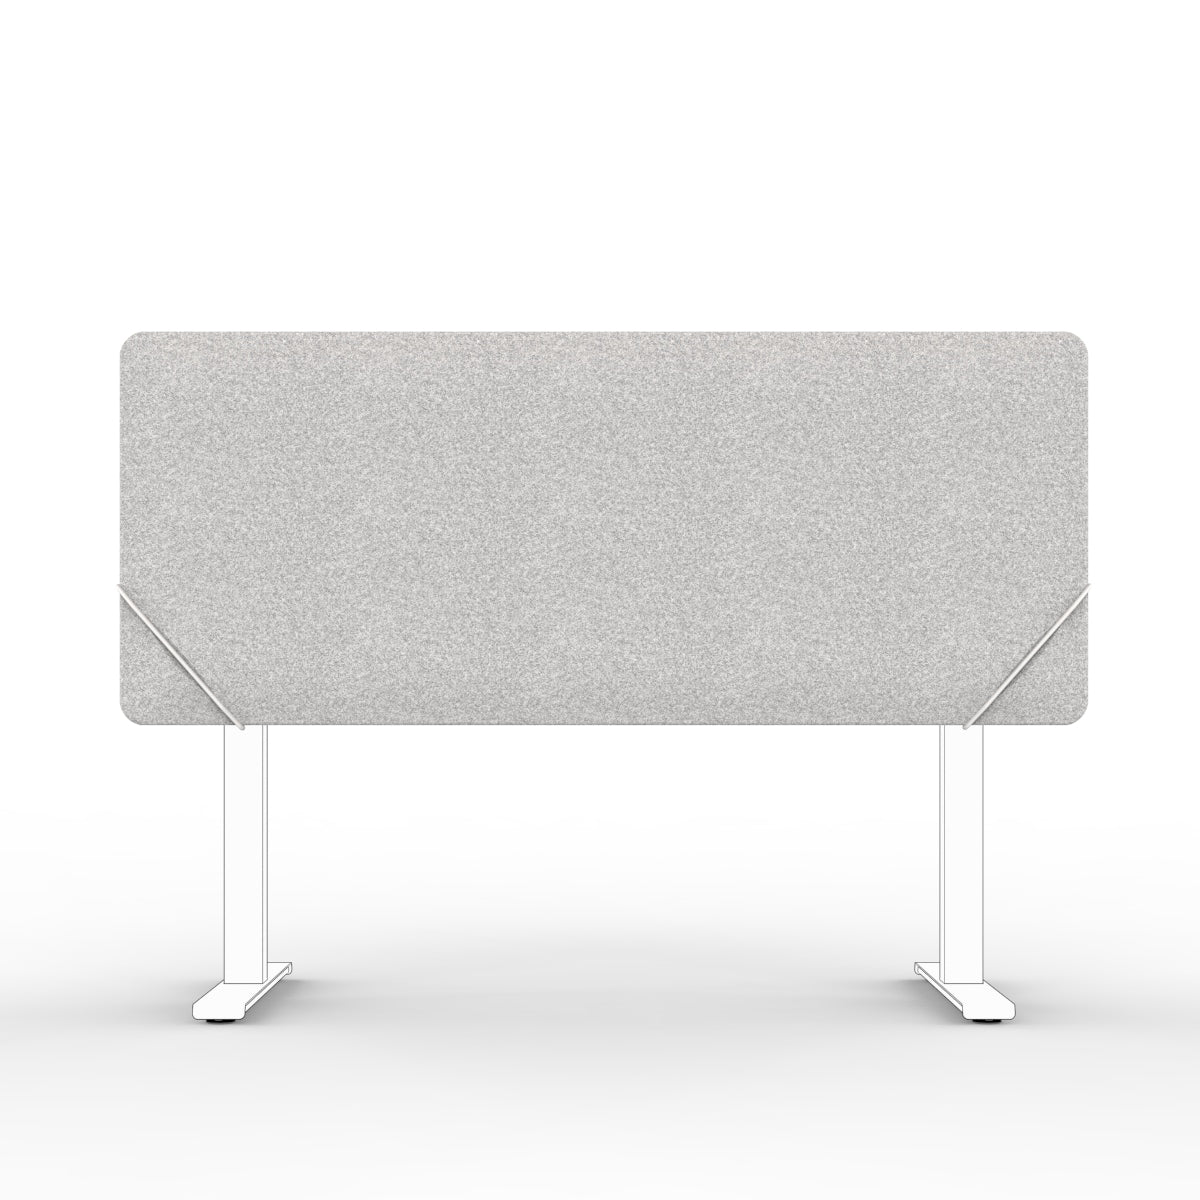 Sound absorbing table divider  in light grey felt with white slide on table mounts. Bordskjerm for skrivebord. Avskjerming og lyddemping på kontor